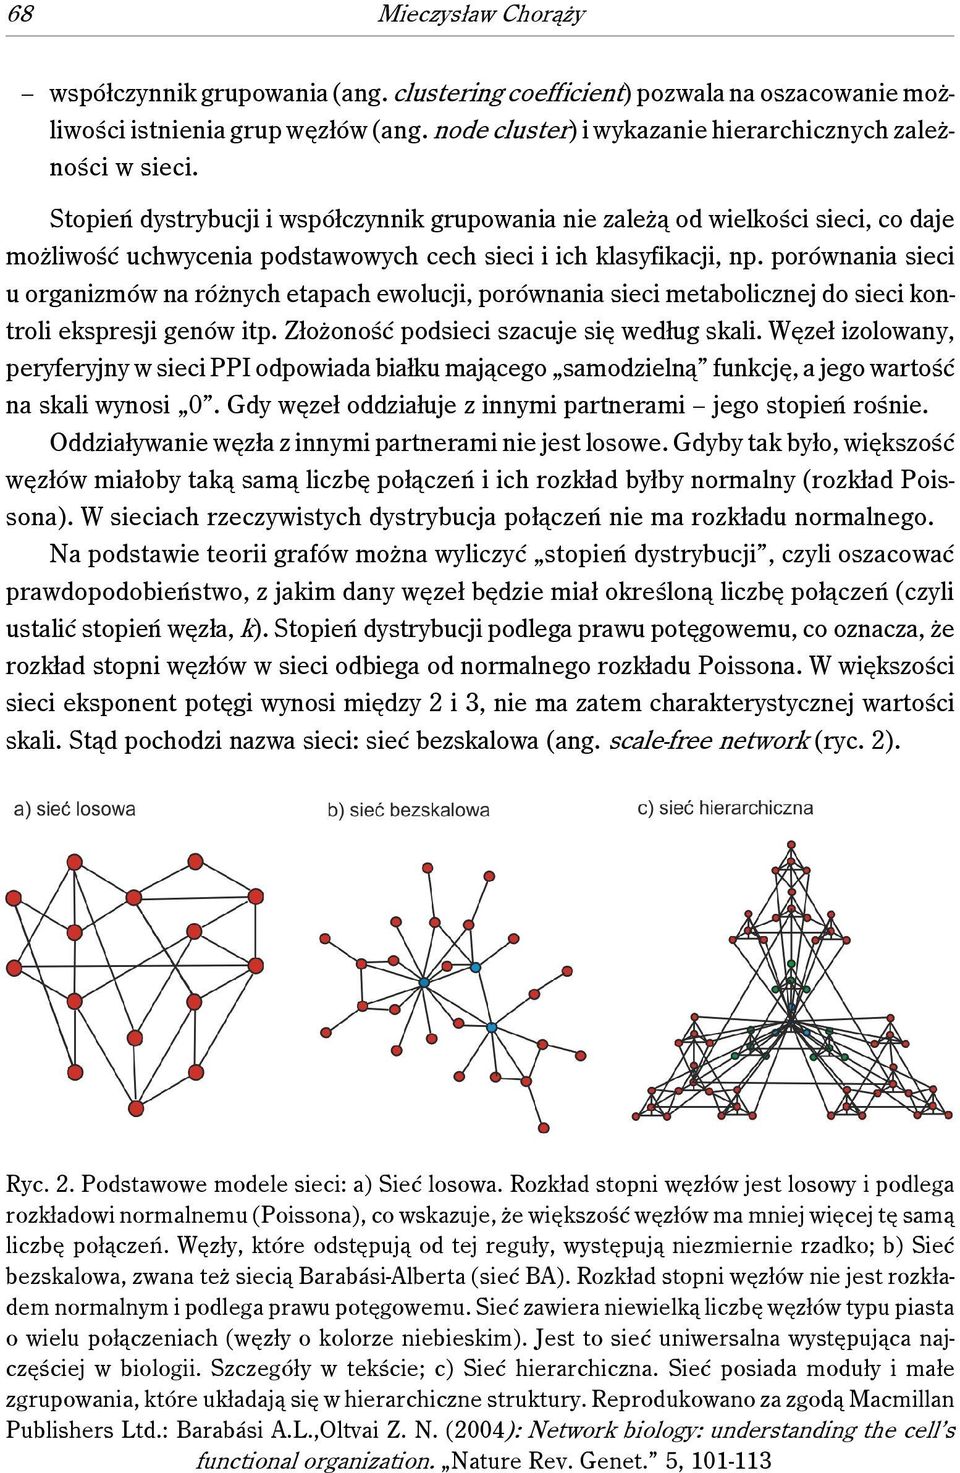 porównania sieci u organizmów na różnych etapach ewolucji, porównania sieci metabolicznej do sieci kontroli ekspresji genów itp. Złożoność podsieci szacuje się według skali.